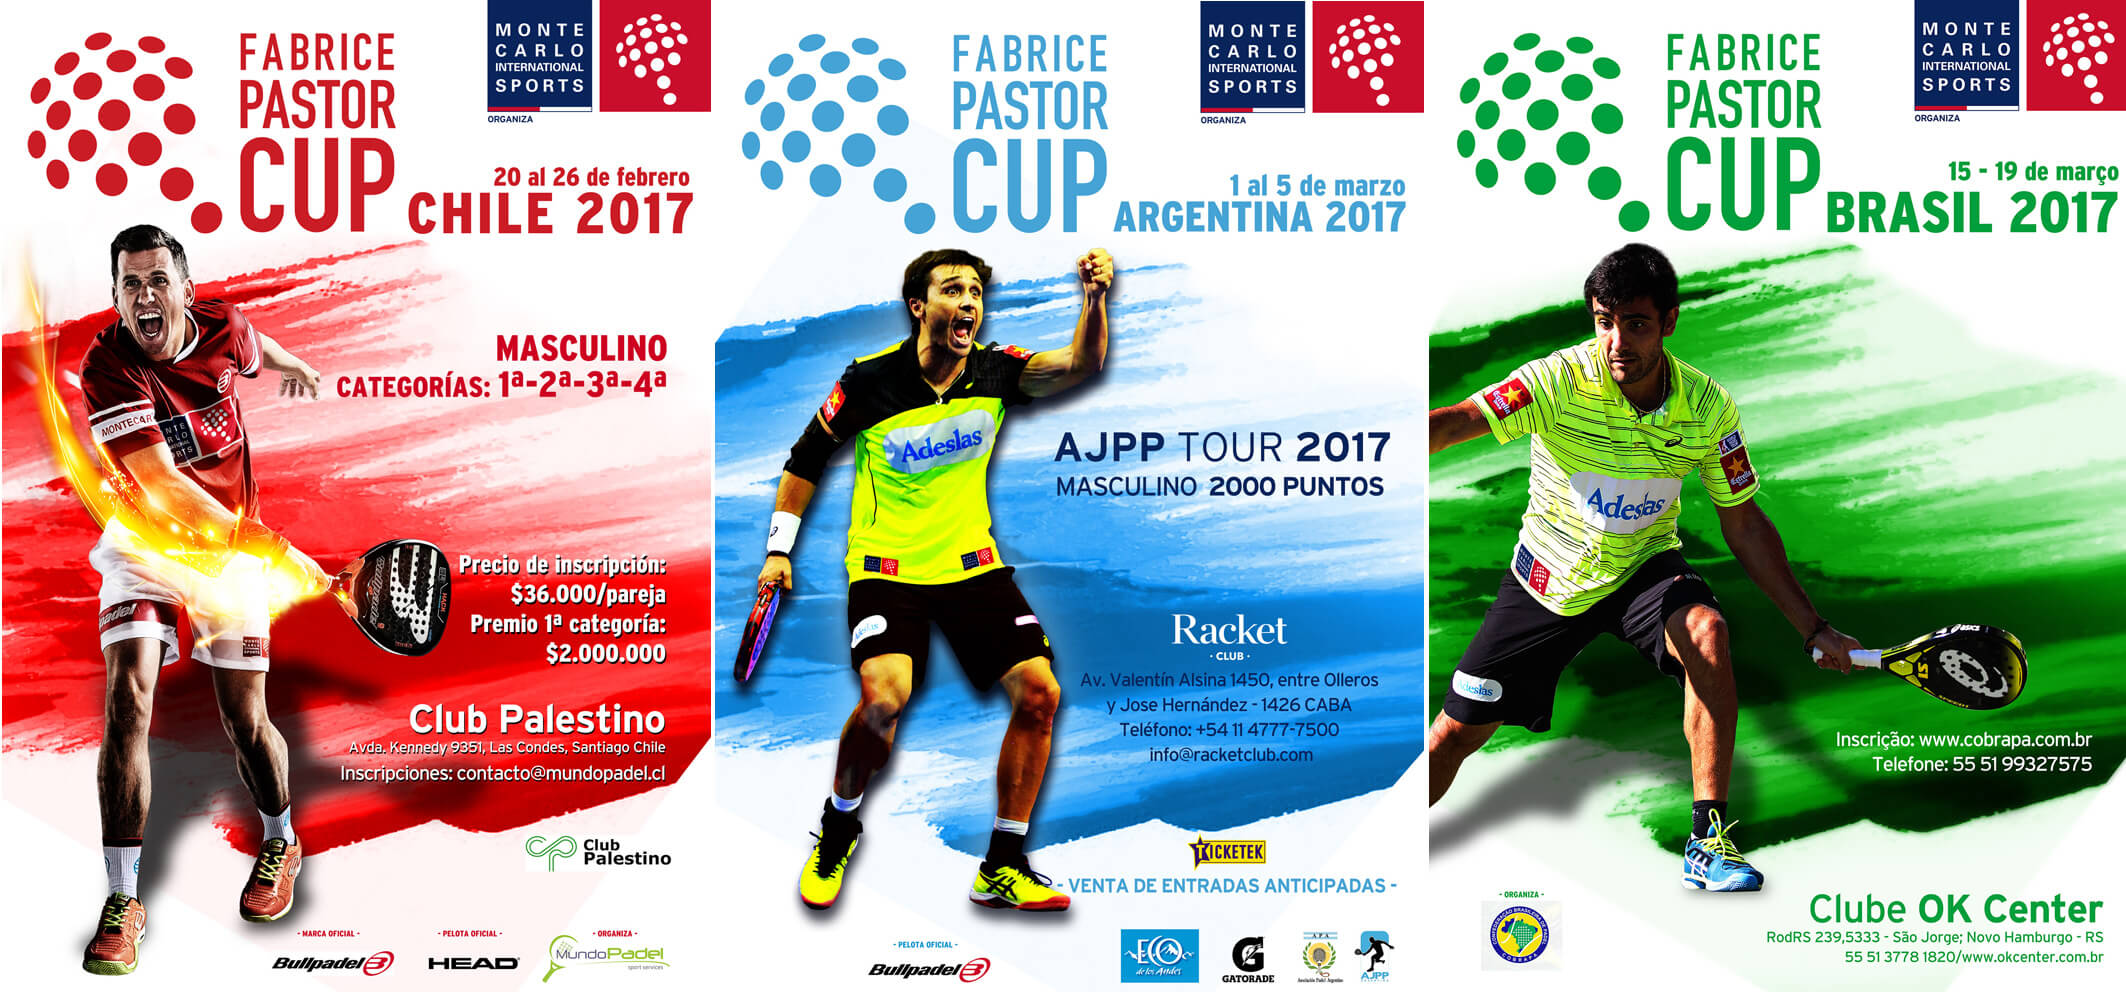 Fabrice Pastor Cup i Chile, Argentina og Brasilien